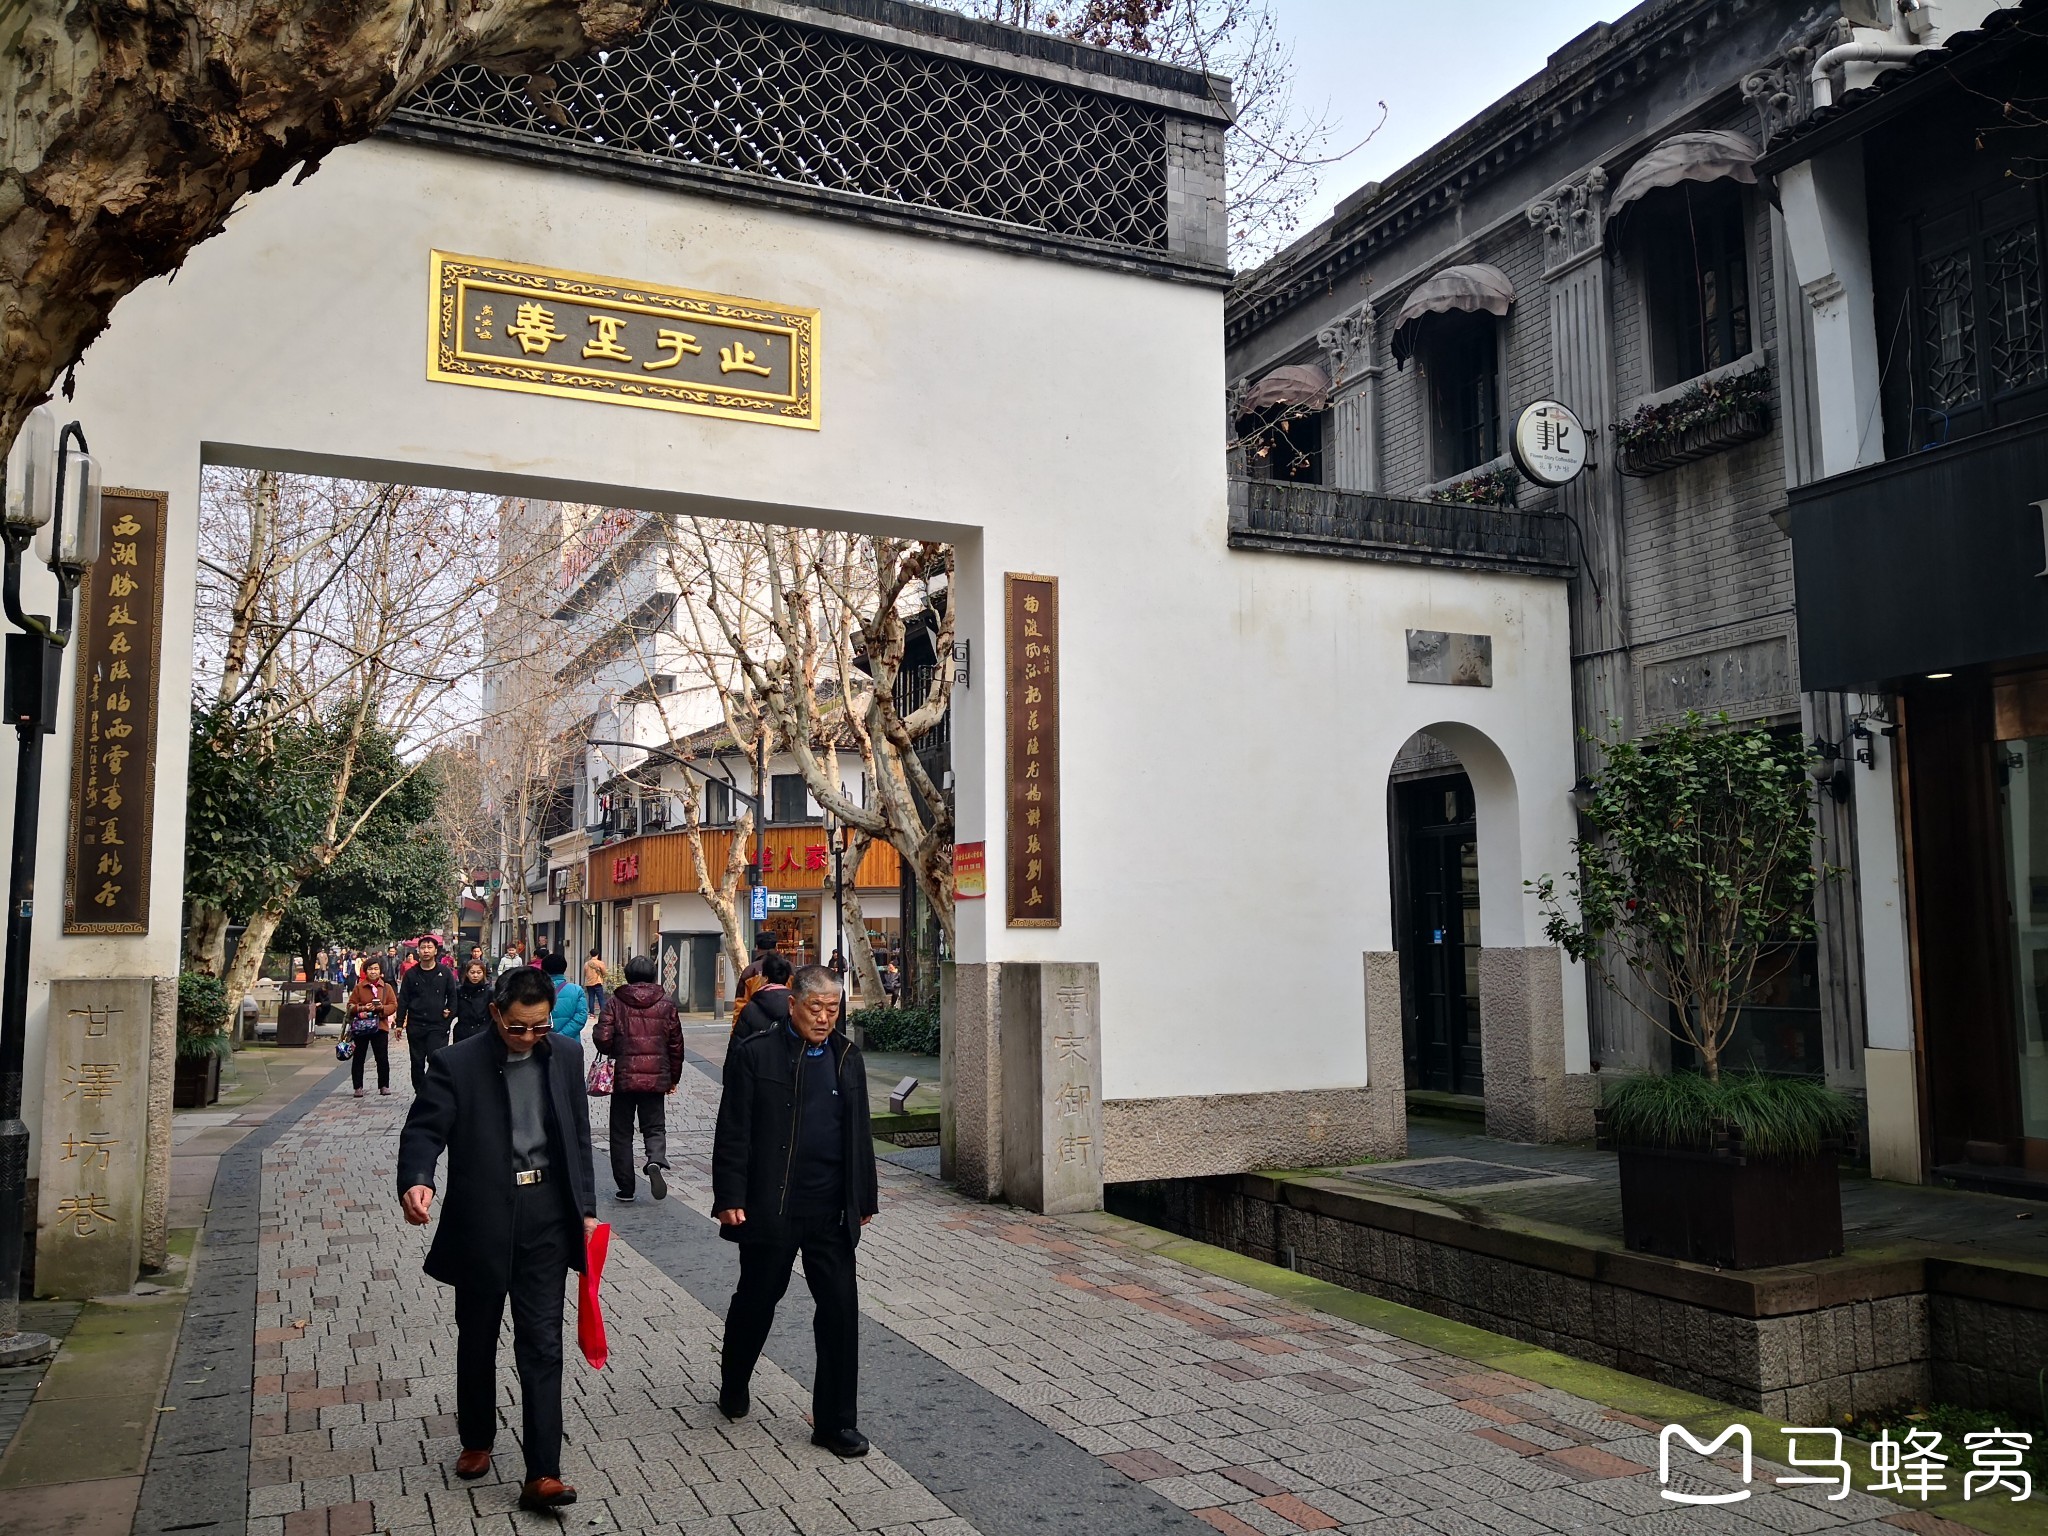 杭州市上城区的"南宋御街"游览(一)----走遍杭州